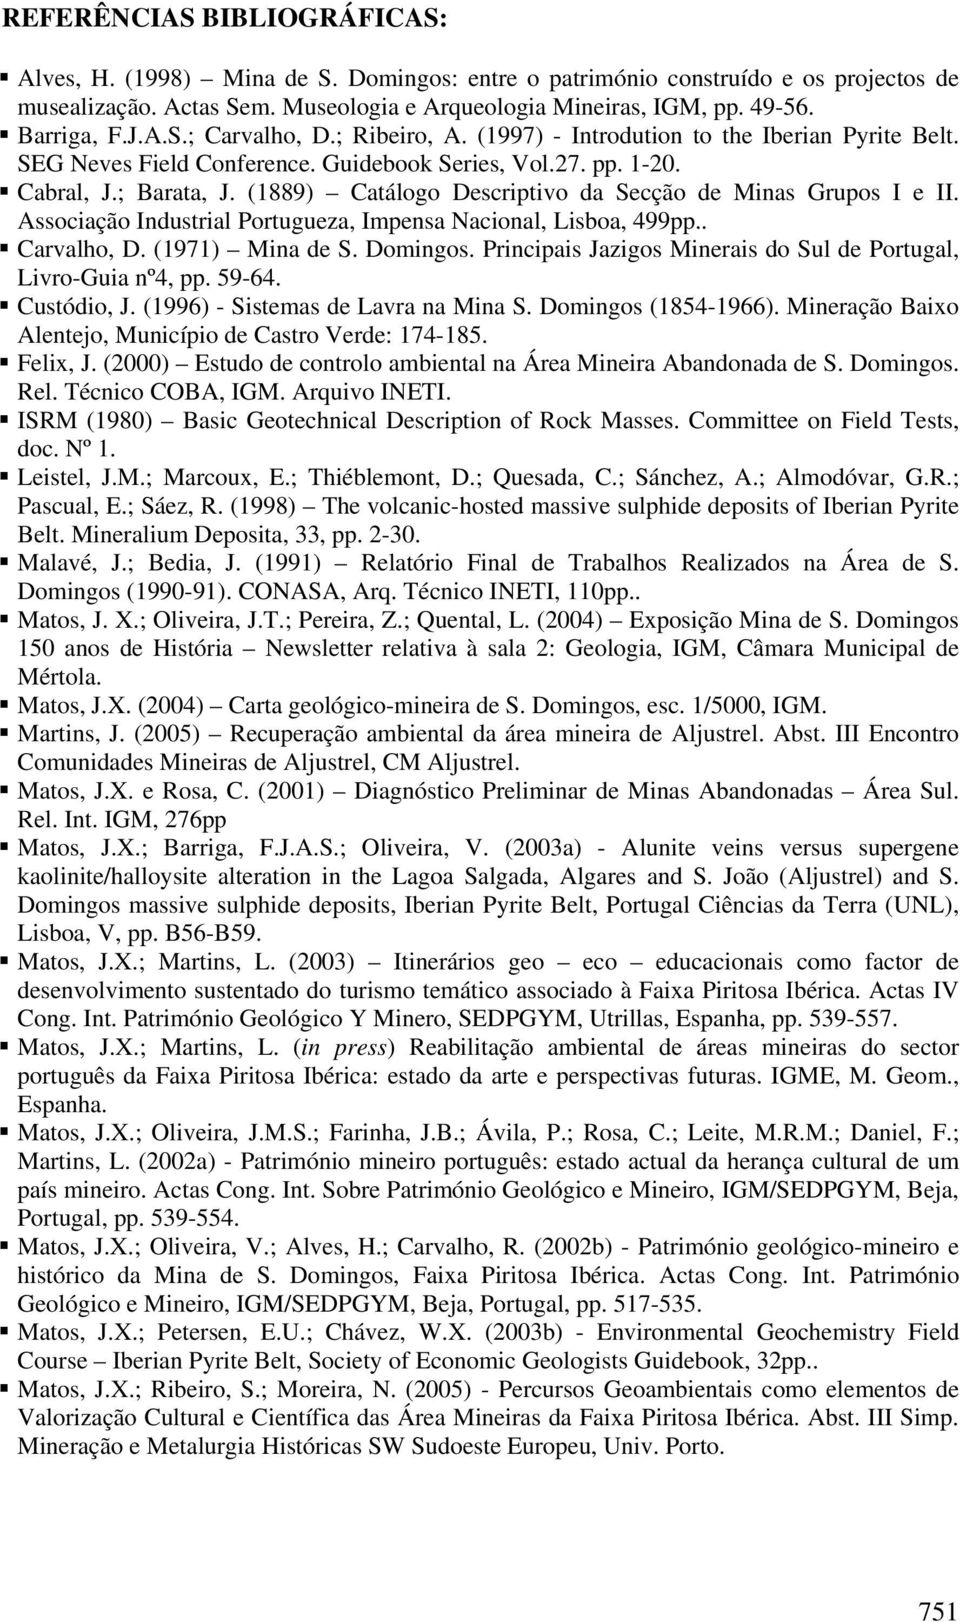 (1889) Catálogo Descriptivo da Secção de Minas Grupos I e II. Associação Industrial Portugueza, Impensa Nacional, Lisboa, 499pp.. Carvalho, D. (1971) Mina de S. Domingos.